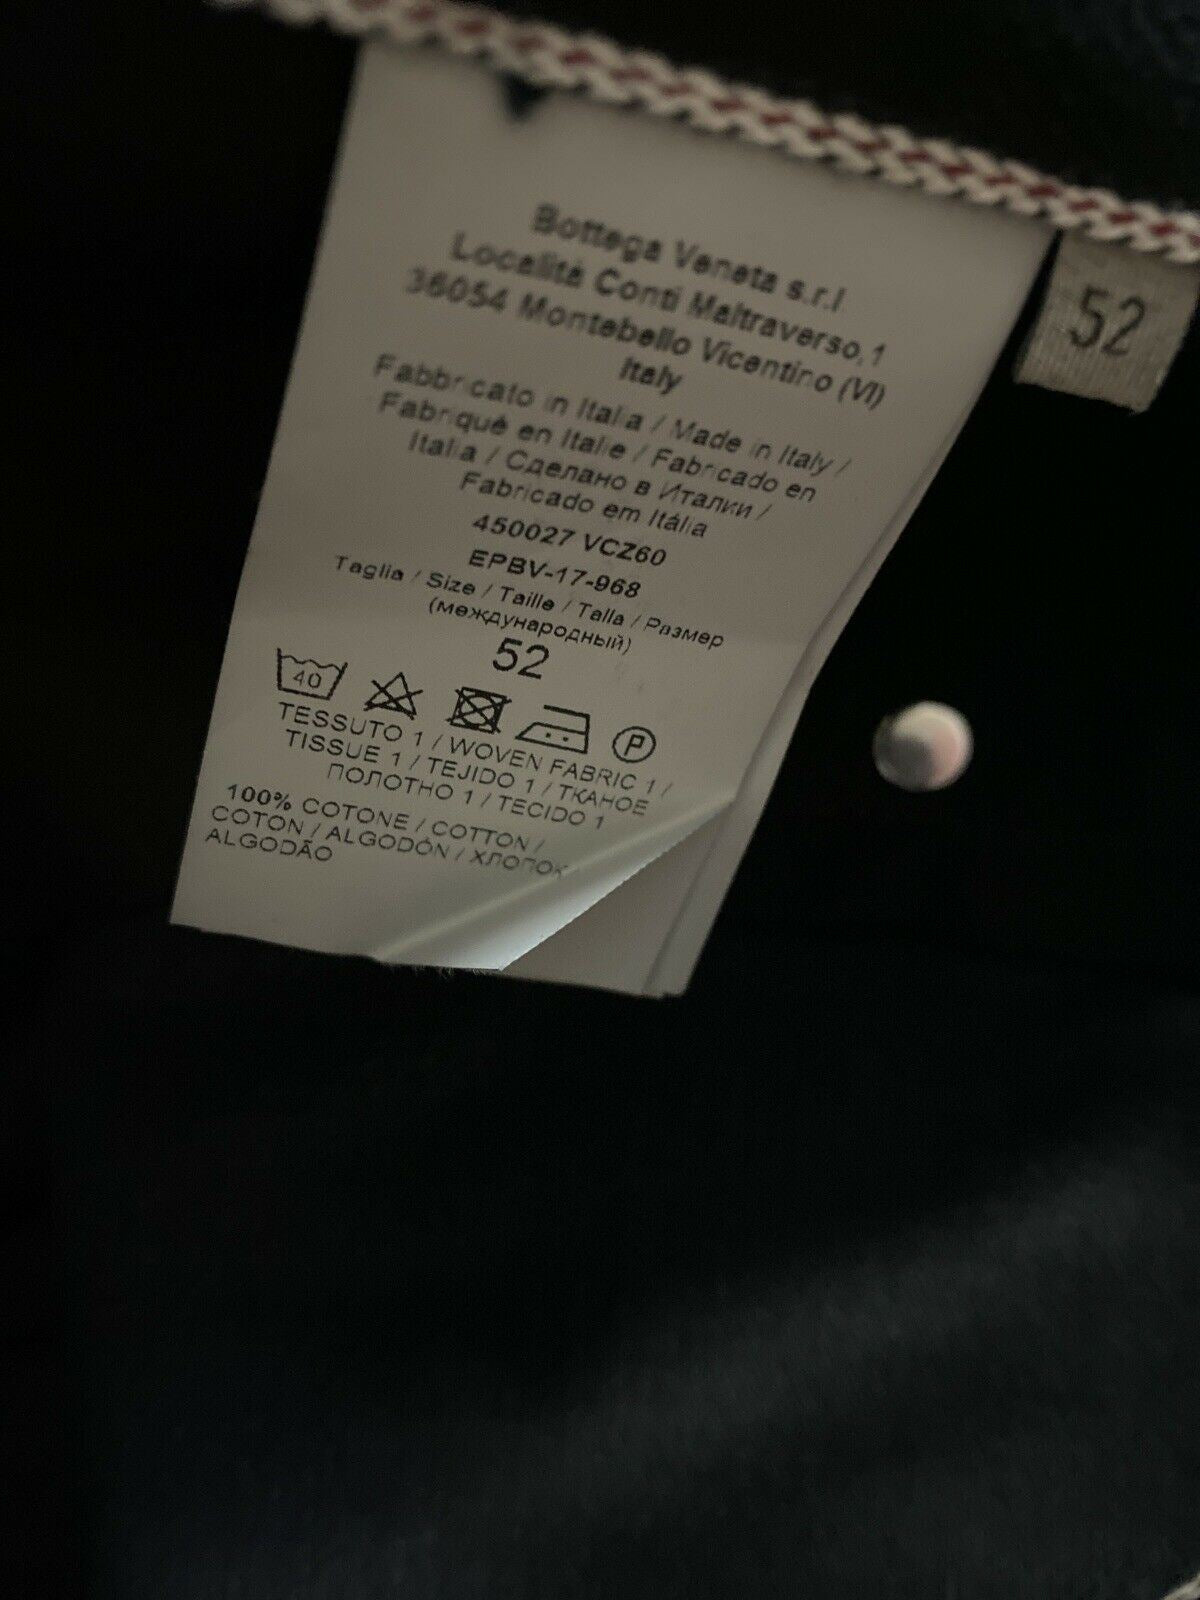 СЗТ $690 Мужские джинсовые брюки Bottega Veneta DK Black 36 США (52 ЕС) Италия